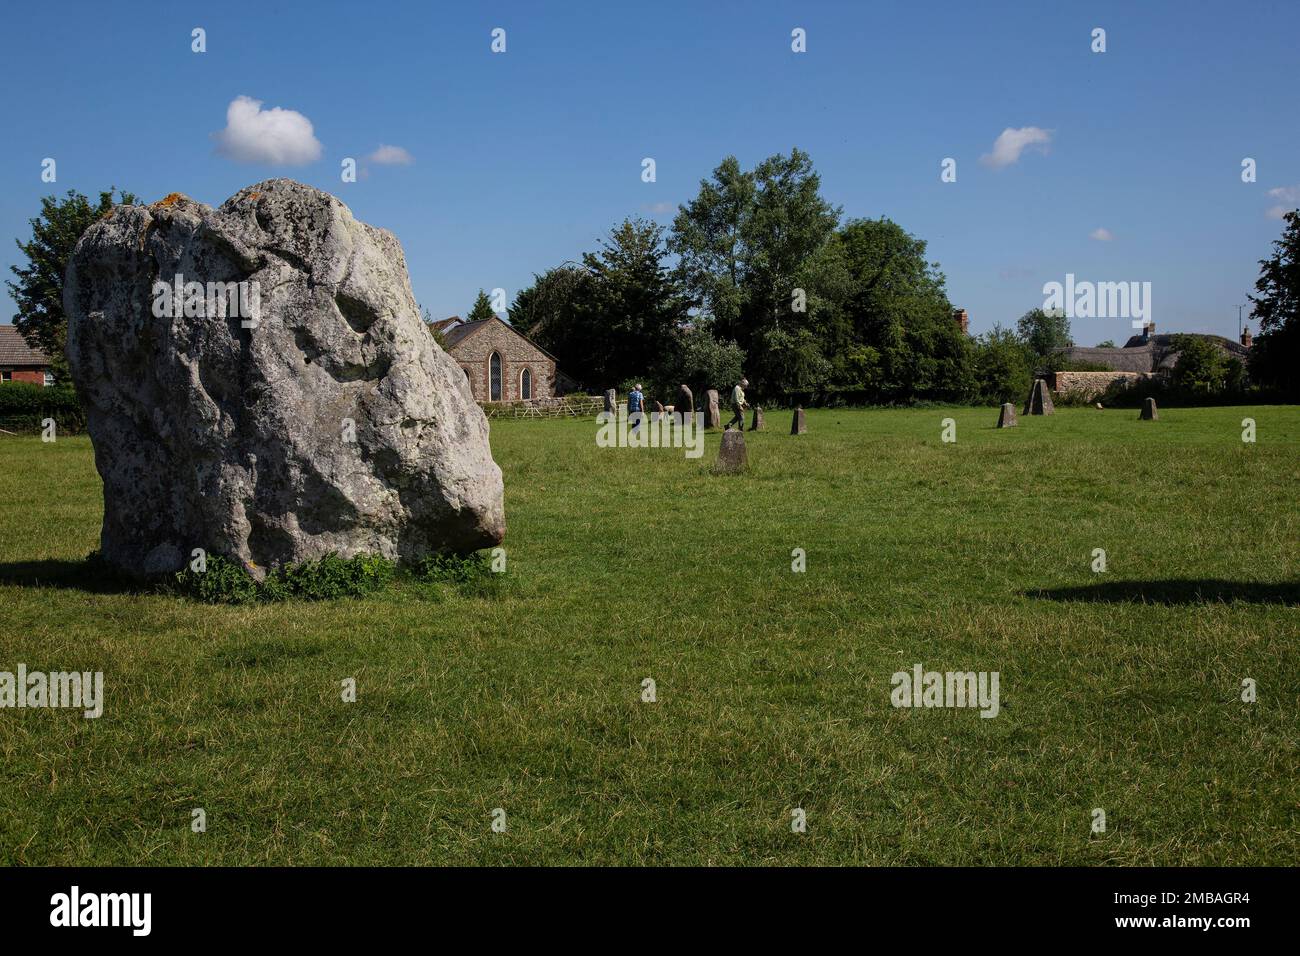 Les visiteurs d'été du monument néolithique d'Avebury dans le Wiltshire qui contient le plus grand cercle de pierre mégalithique du monde Banque D'Images